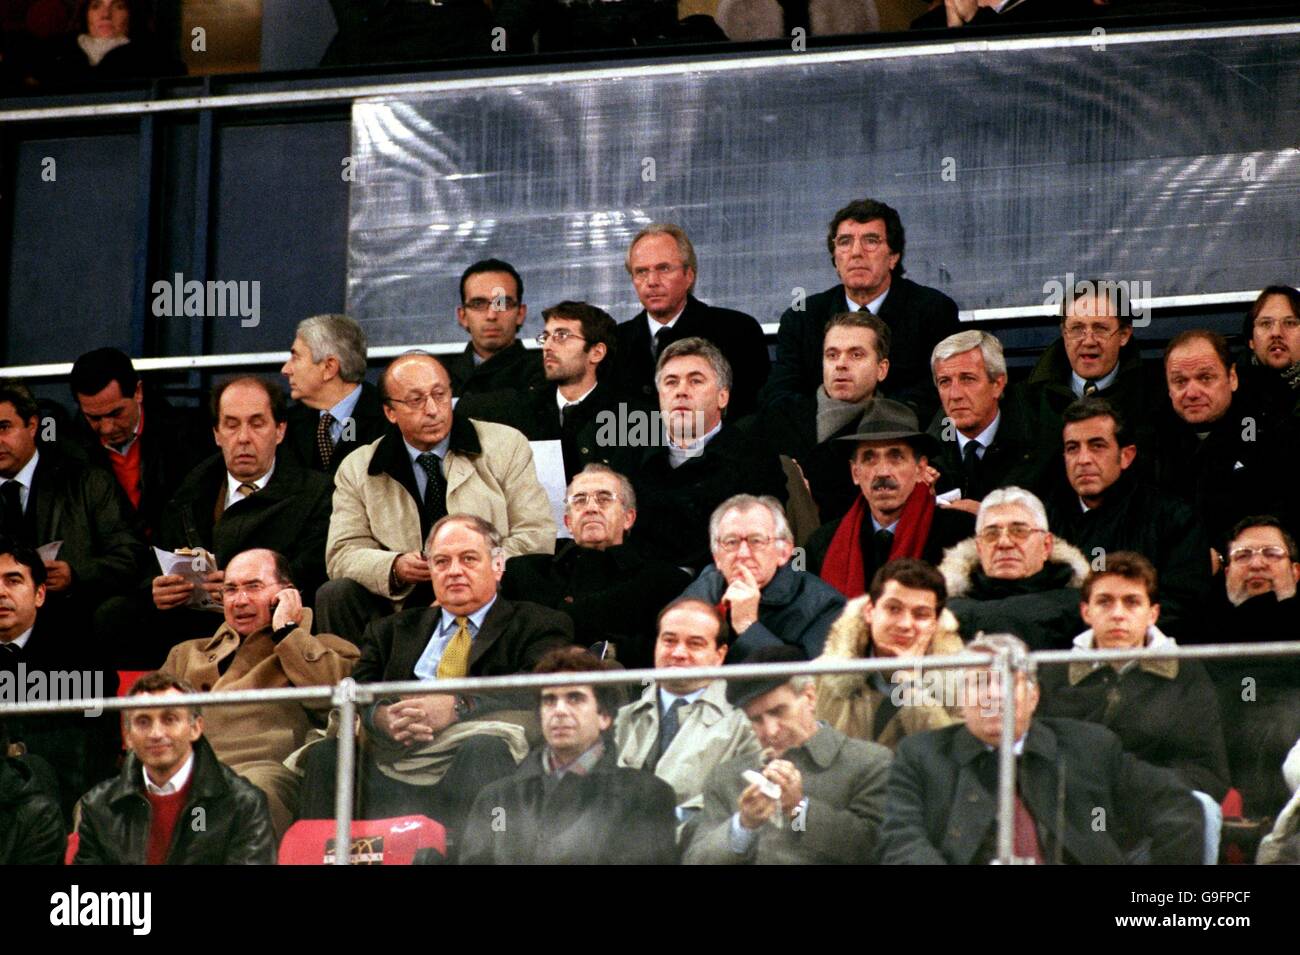 Il nuovo manager inglese Sven Goran Eriksson (c, back row) guarda dallo stand, seduto accanto all'ex direttore nazionale italiano Dino Zoff (r, back row) Foto Stock